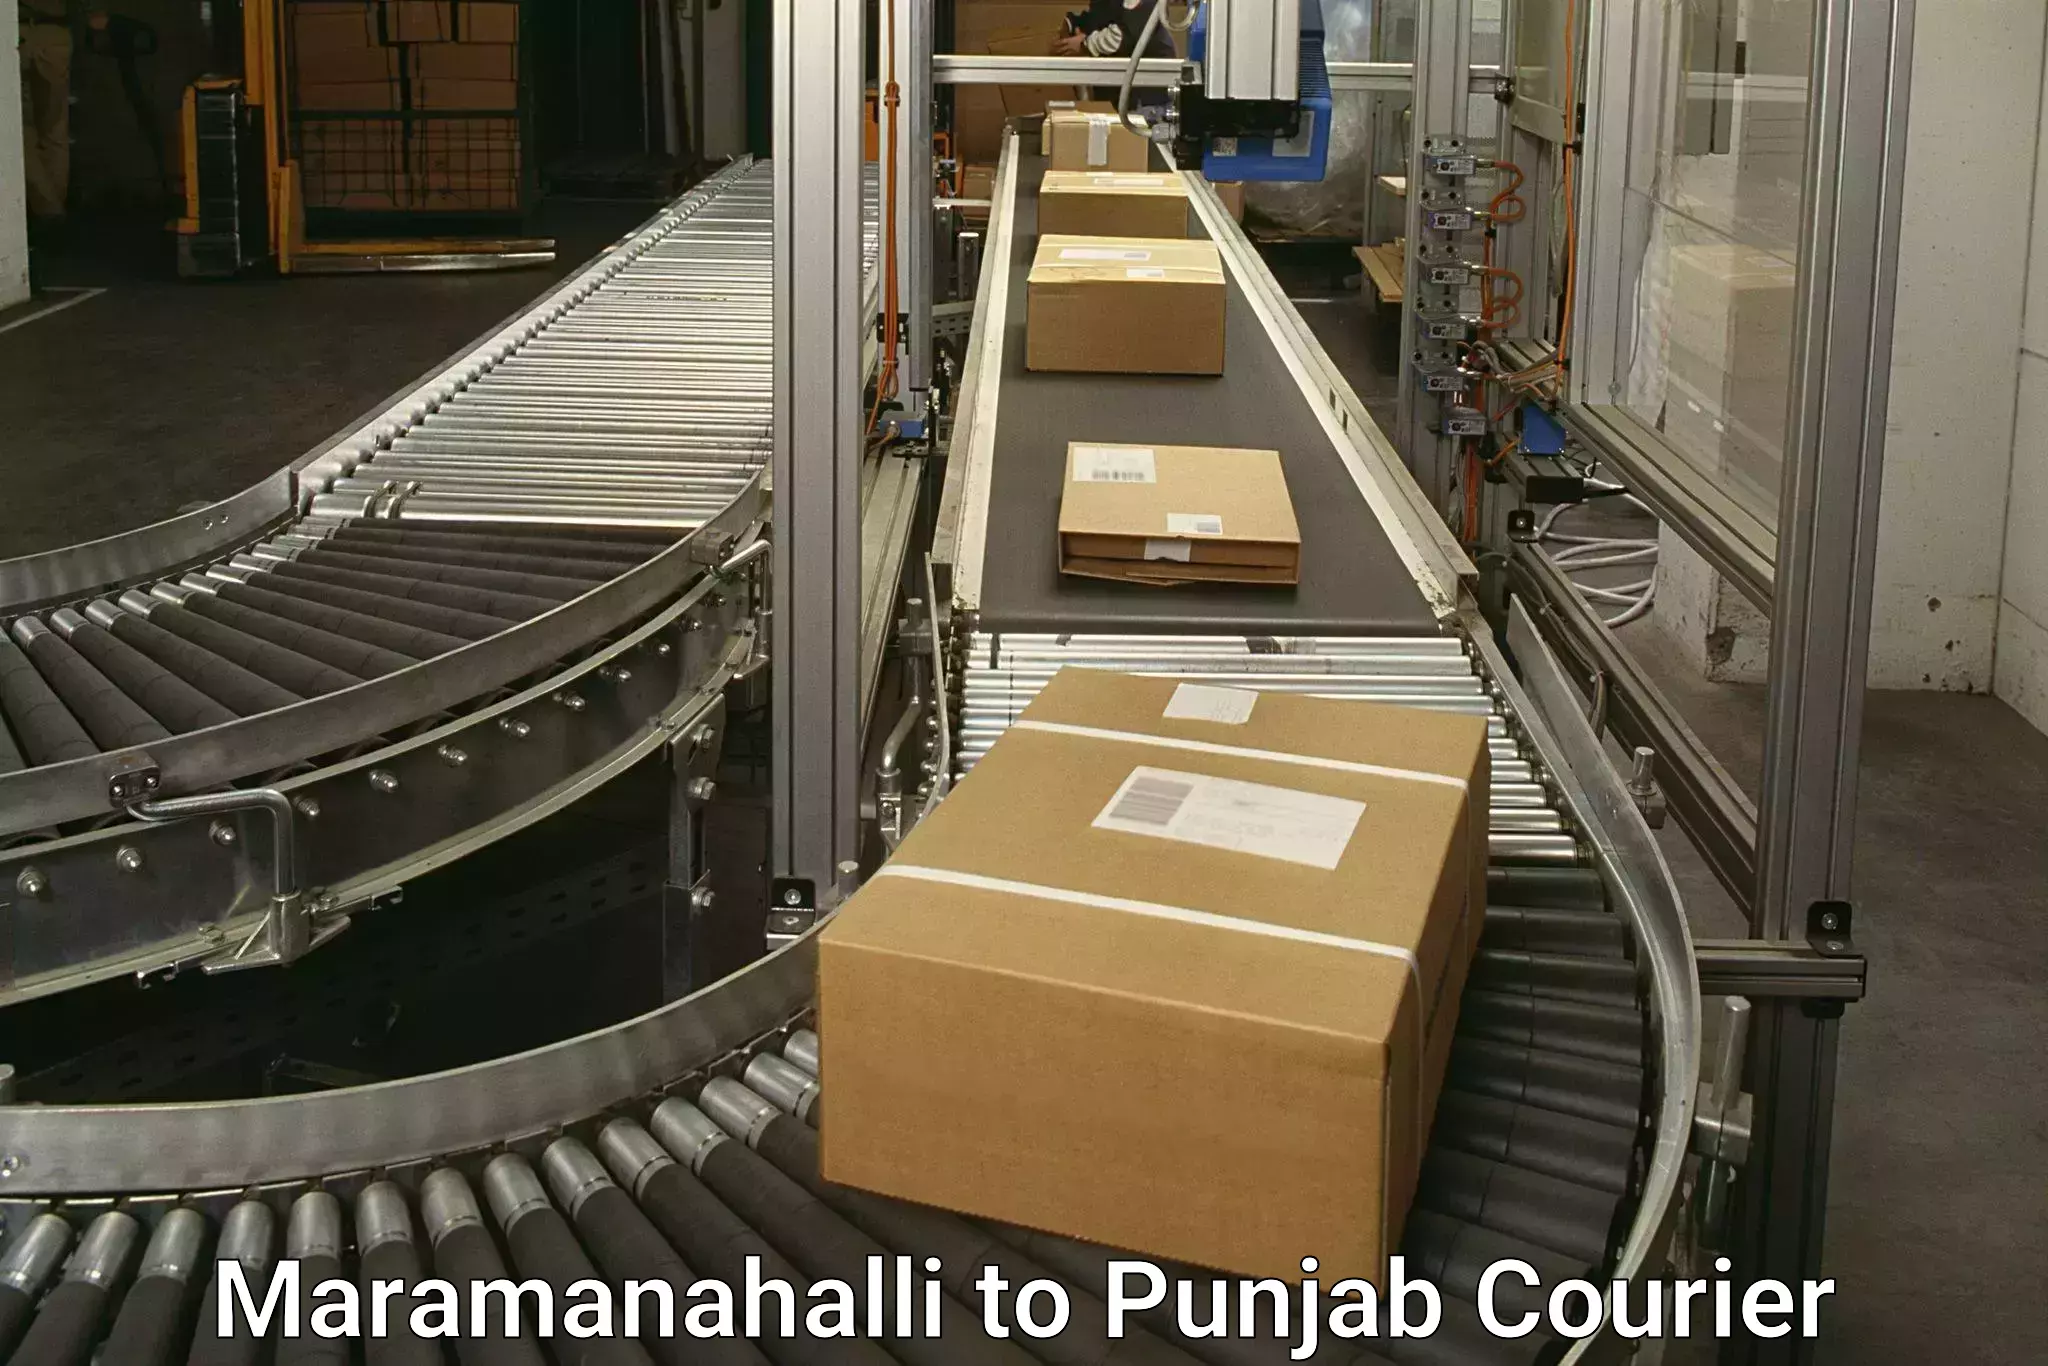 Global shipping networks Maramanahalli to Anandpur Sahib